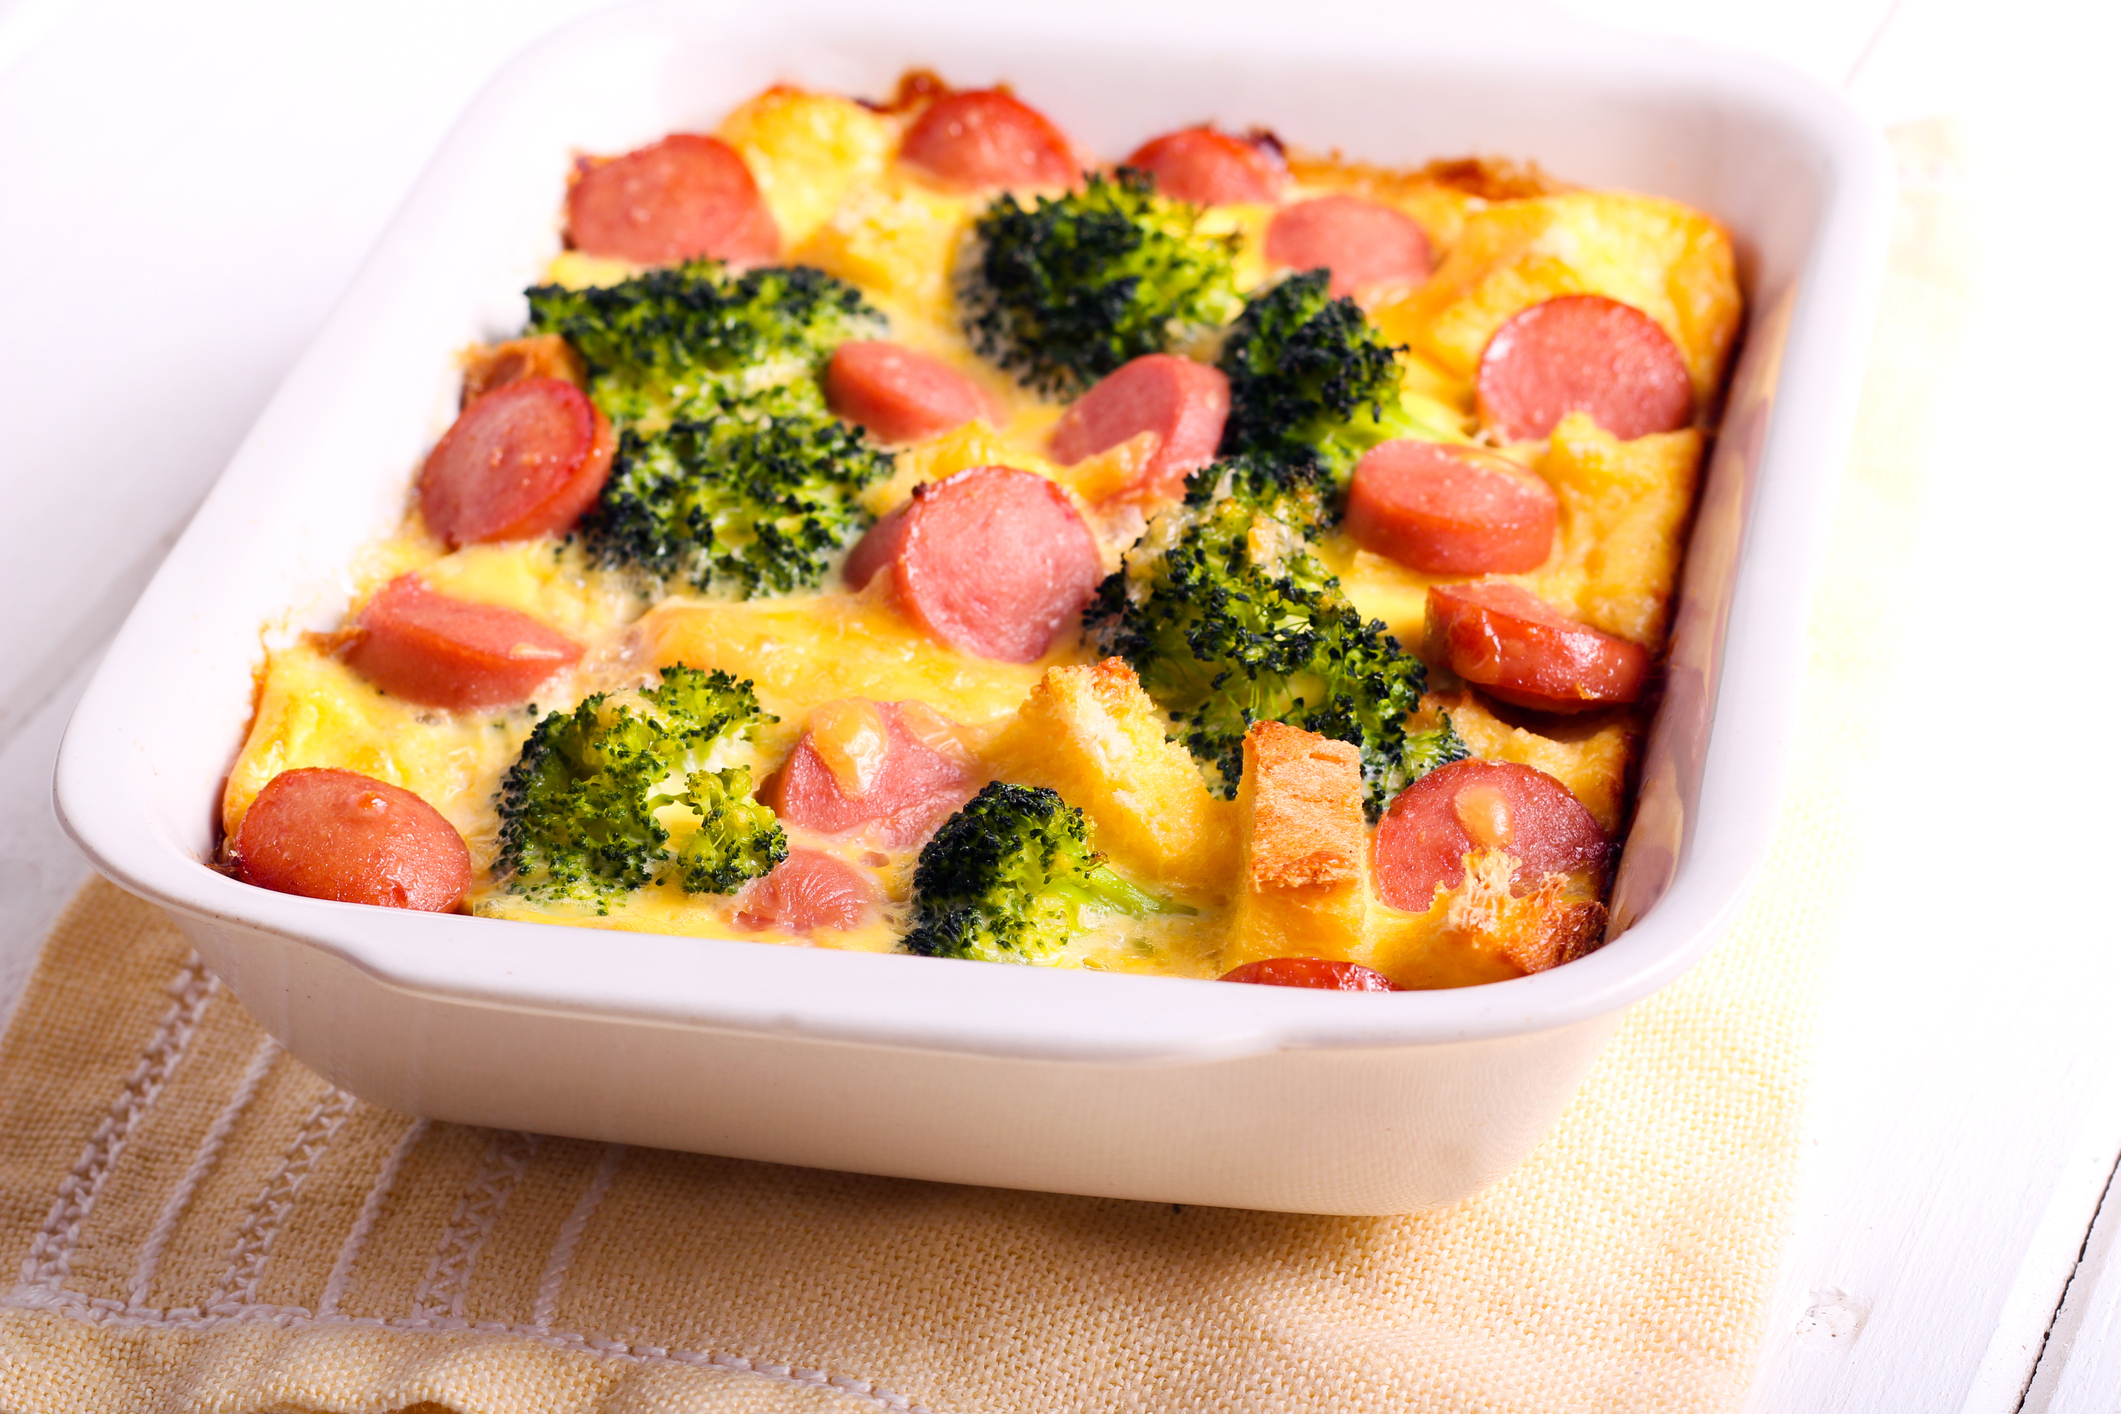 Broccoli, Cheese and Sausage Casserole Recipe